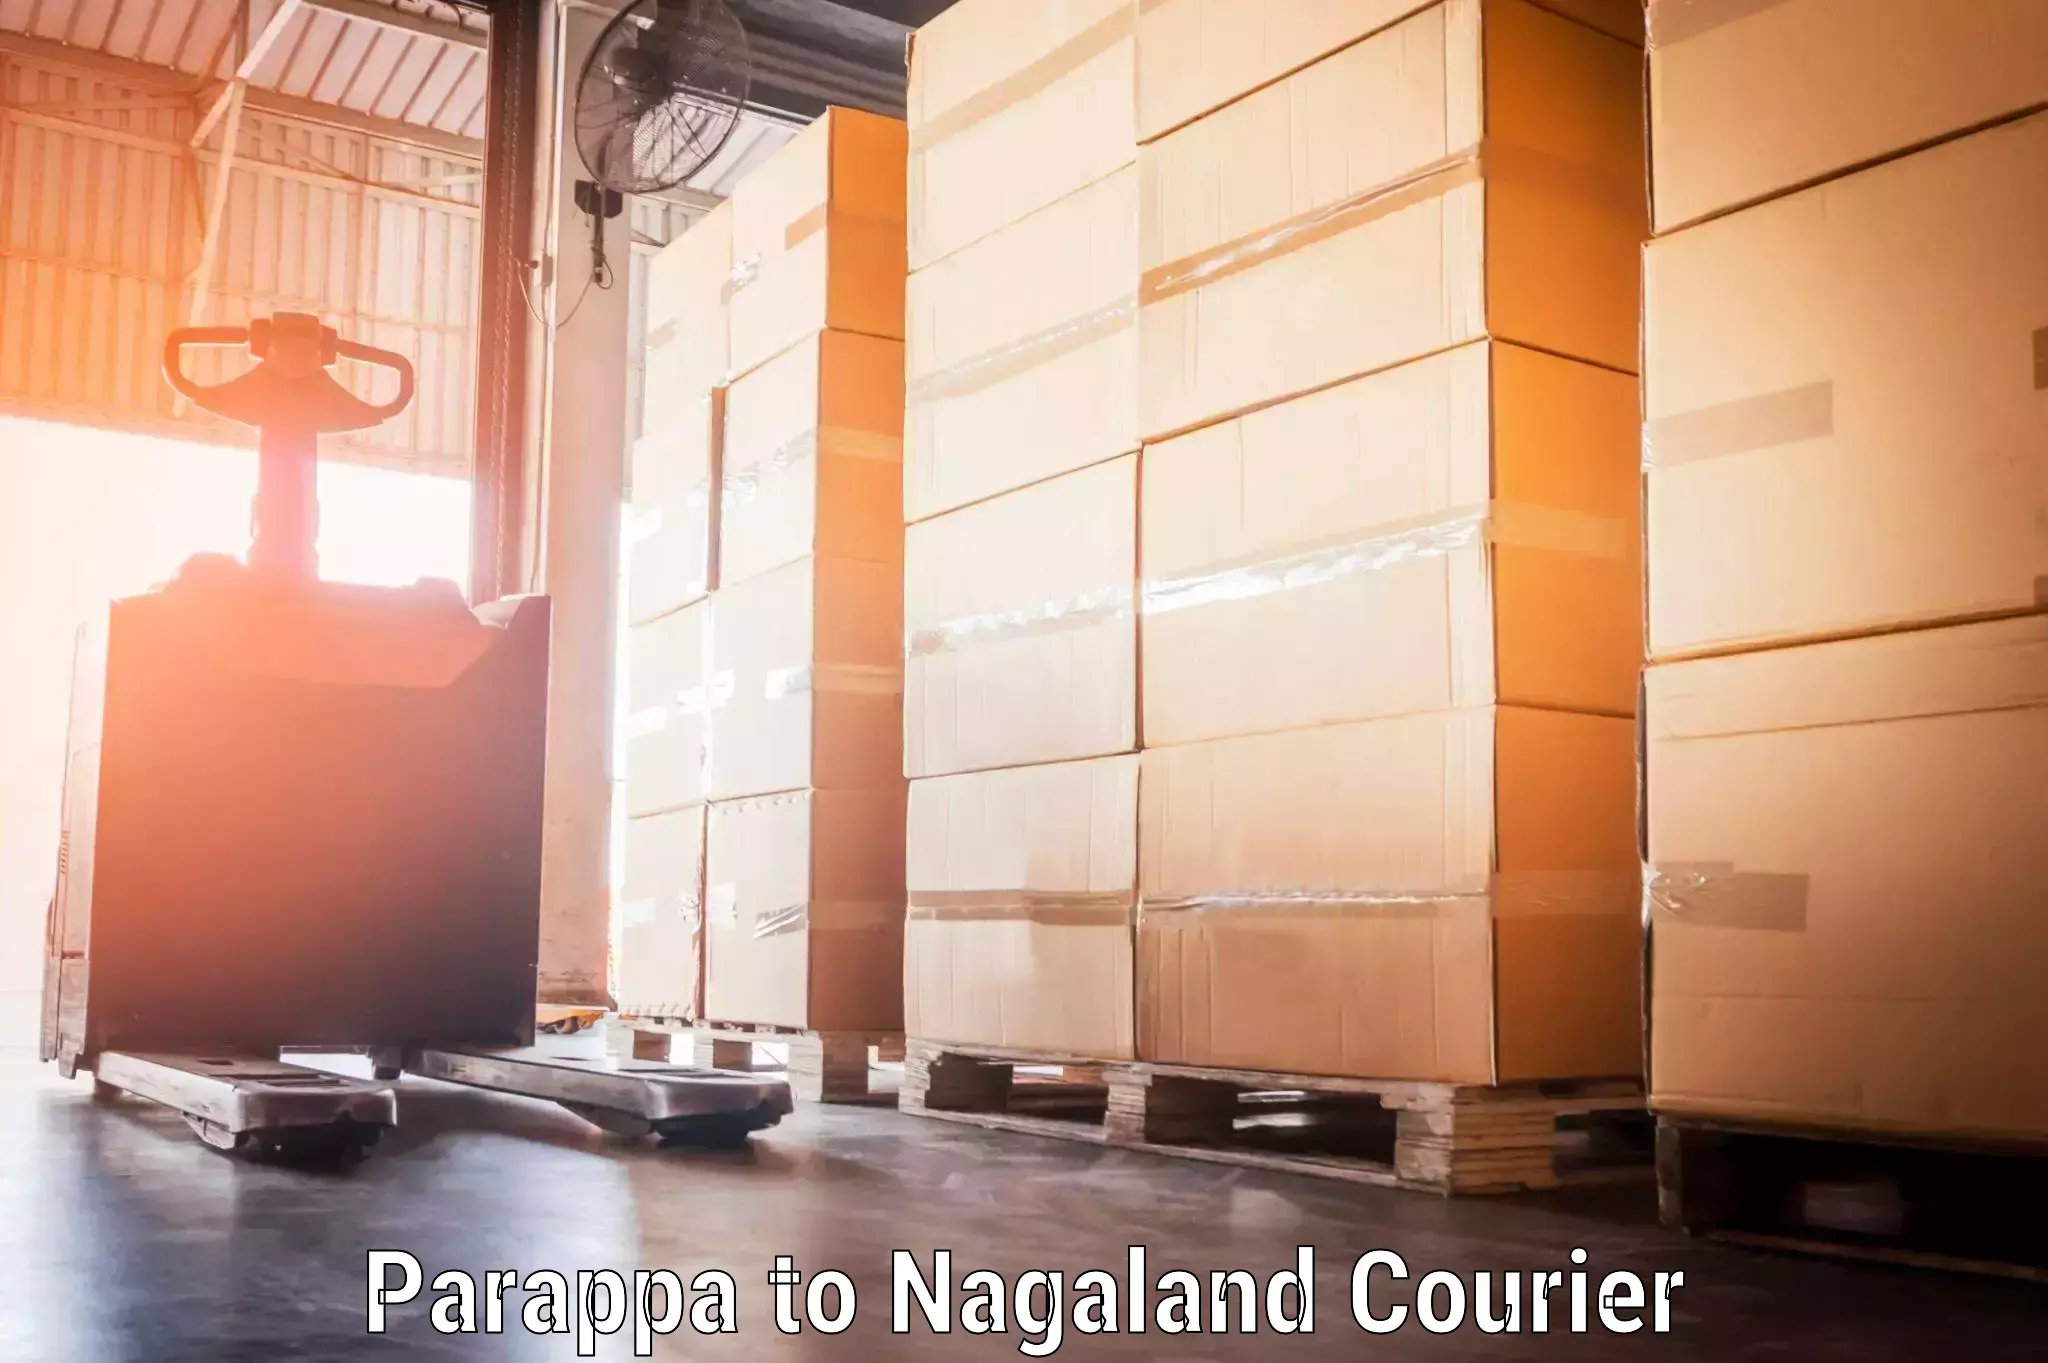 Baggage shipping experience Parappa to Nagaland